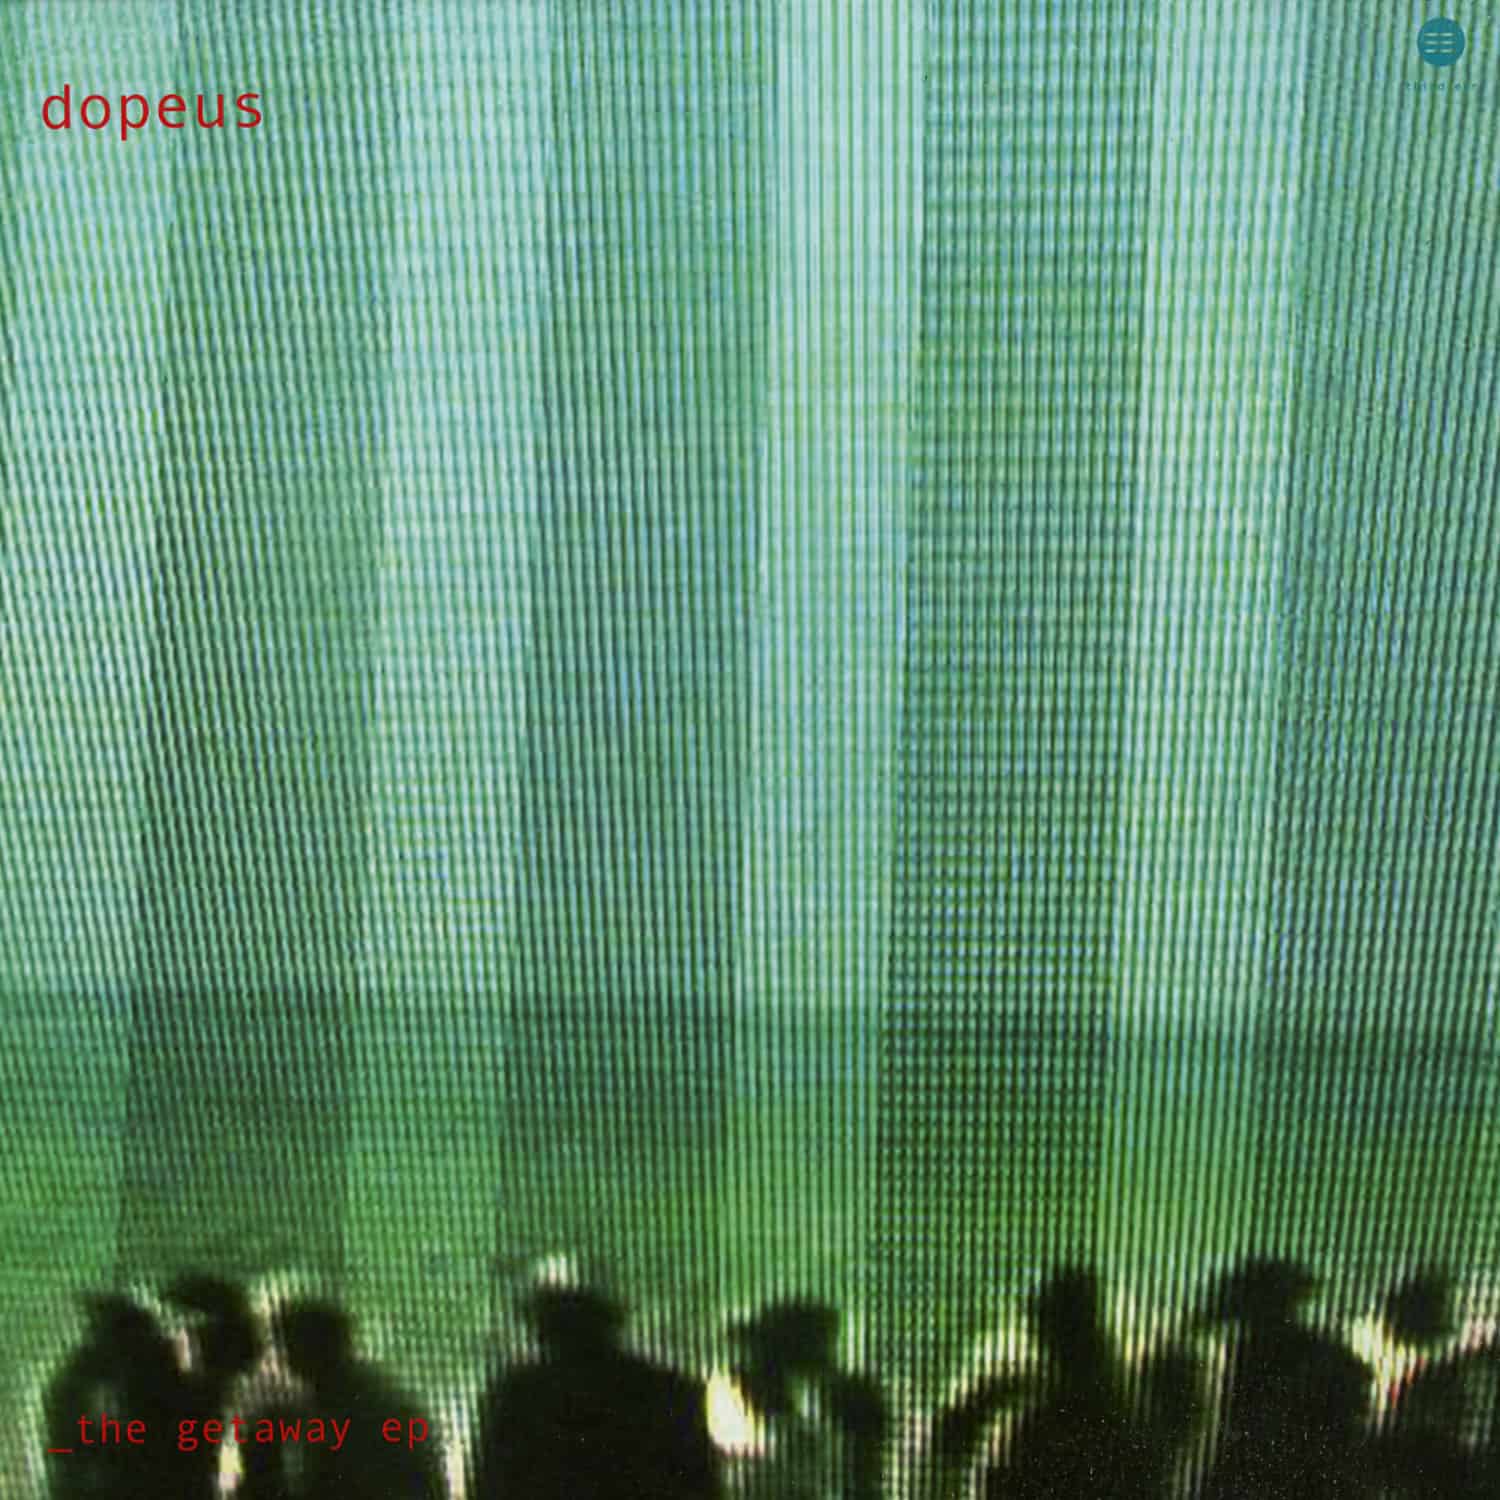 Dopeus - THE GETAWAY EP